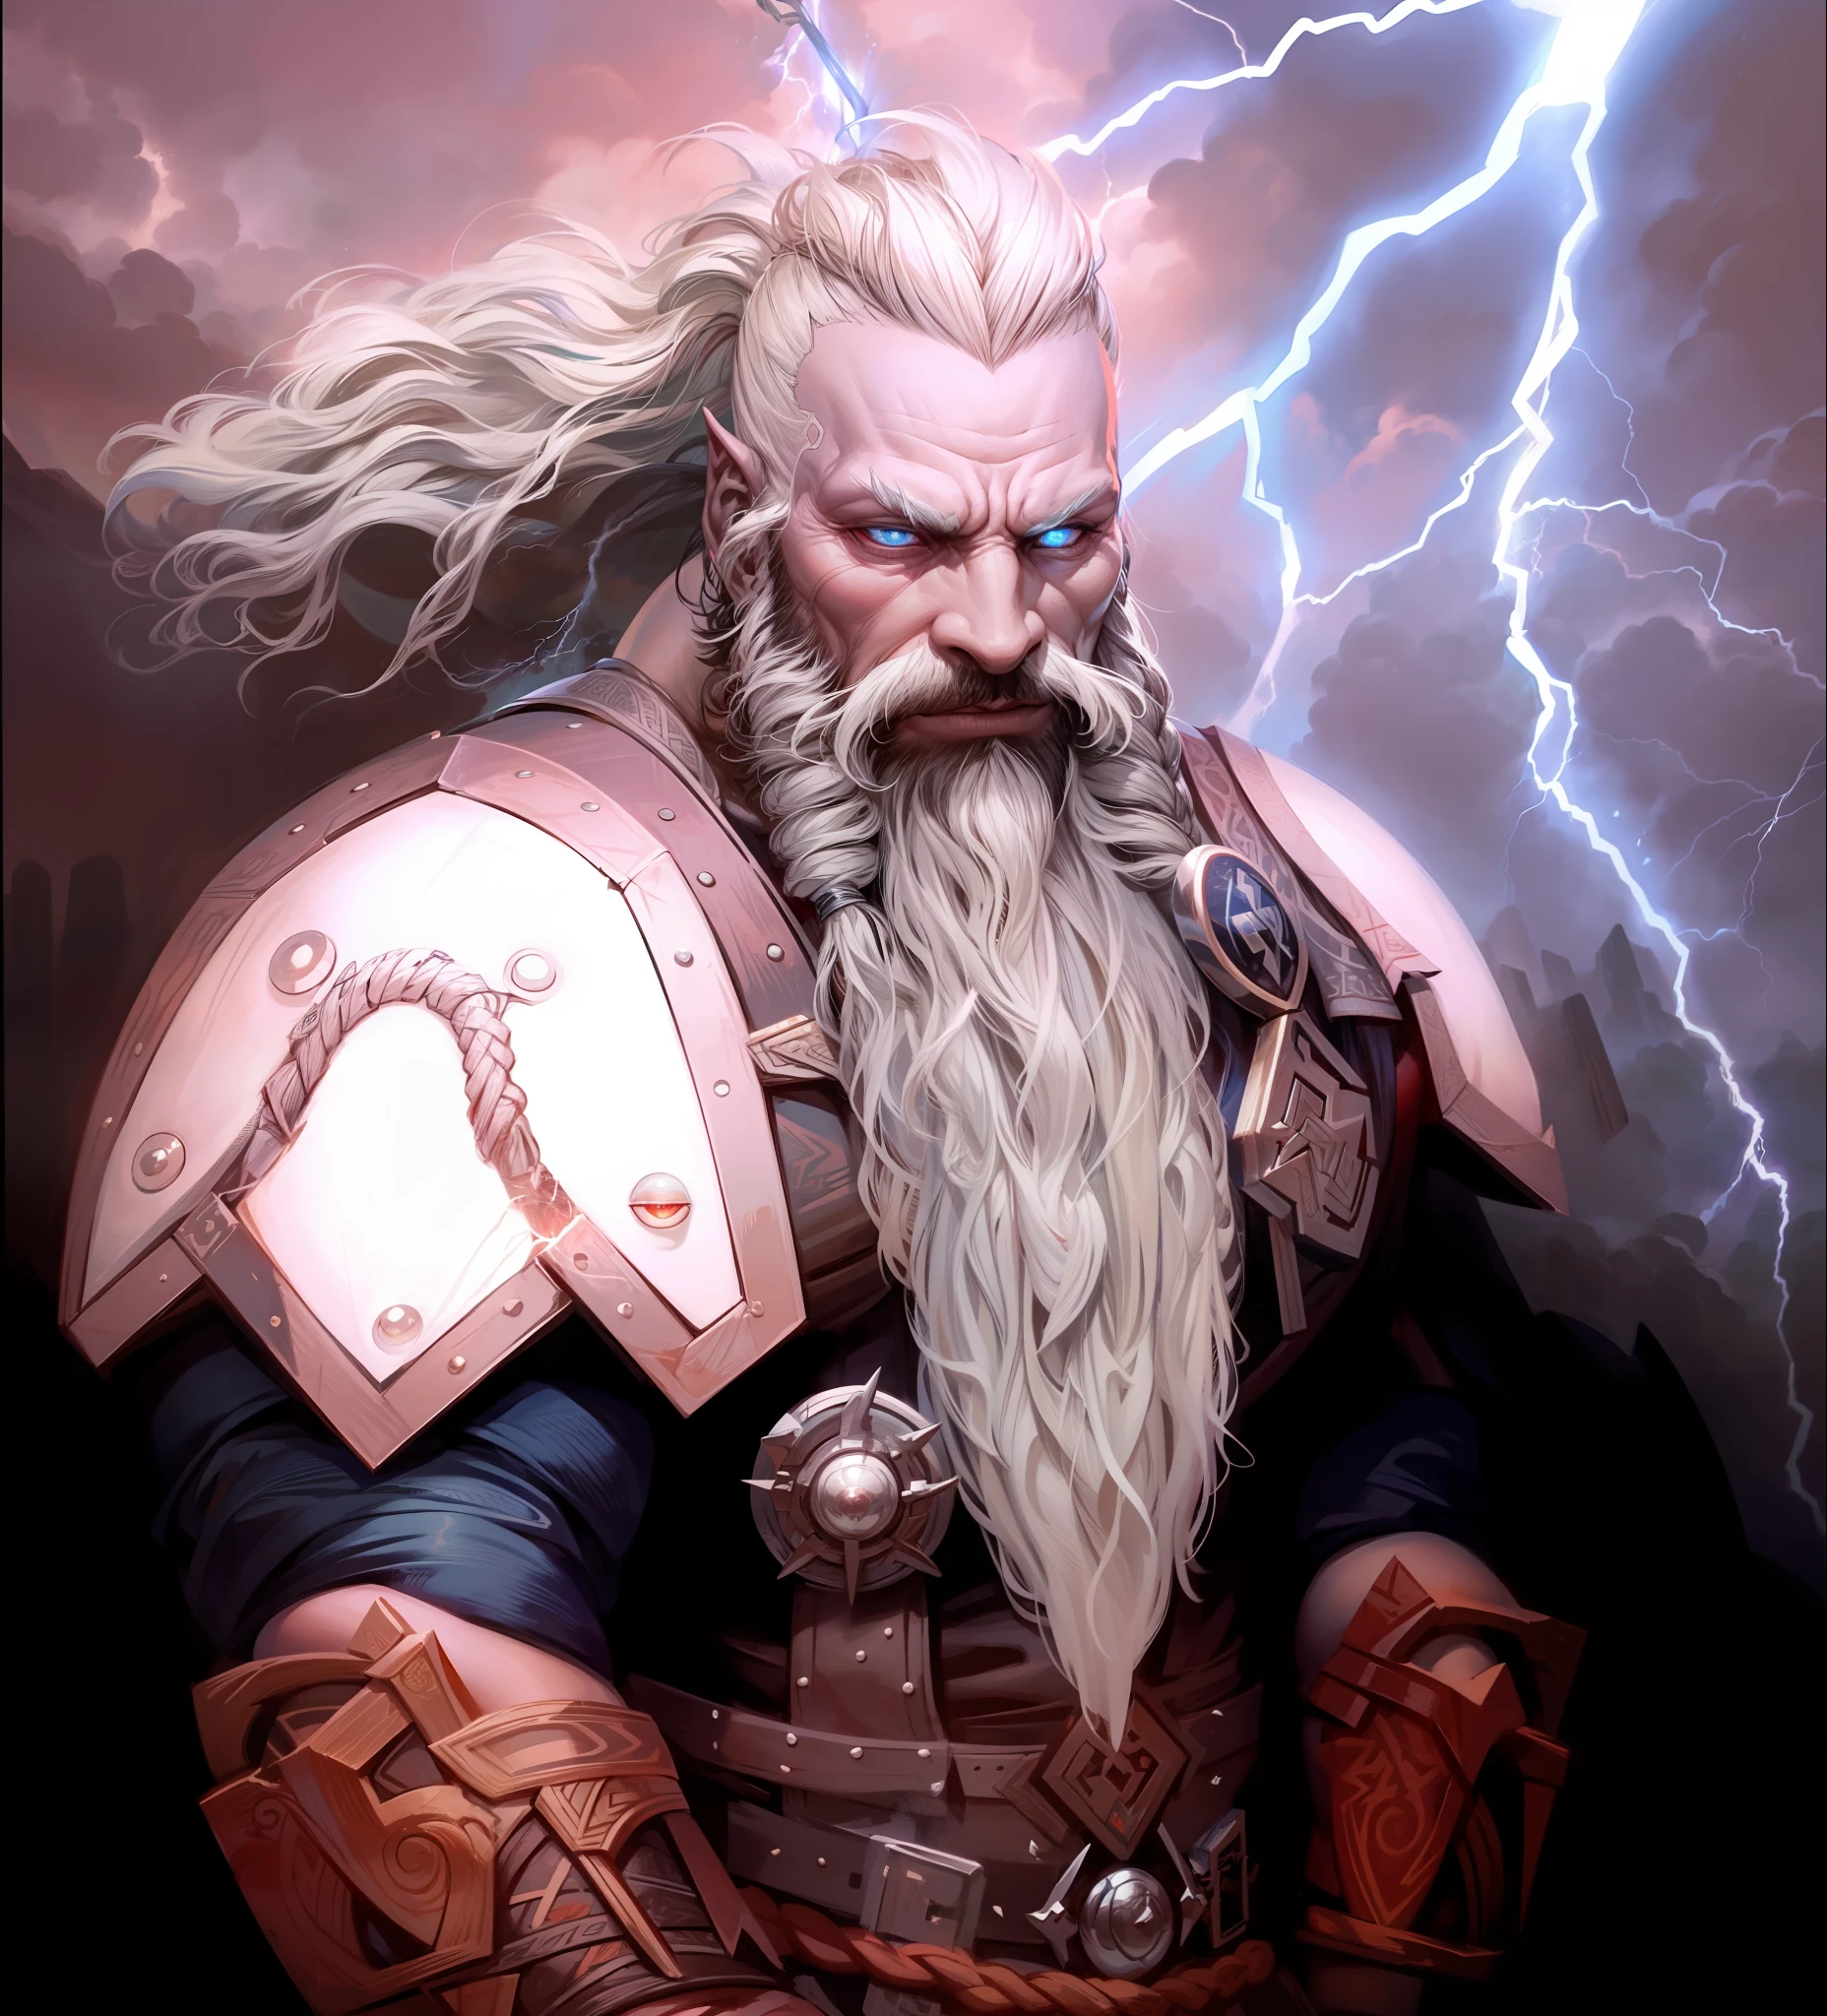 ธอริน: Dwarven พระเจ้า of Thunder War and Lightning, mithycal แคระ, รอยสักแบบนอร์สบนศีรษะของเขา, ฟ้าผ่า coming out of his eyes, ฟ้าผ่า, พระเจ้า of thunder, thunder and ฟ้าผ่า, จมูกใหญ่, ถือขวานในตำนานในมือข้างหนึ่งและค้อนในตำนานในมืออีกข้าง, ผมขาวโกนไปด้านข้าง, อินเดียนแดงถัก, รอยสักที่ศีรษะ, หนวดเคราสีขาวถัก, หมาป่าแกะสลักไว้ในชุดเกราะของเขา, น่ากลัวอย่างยิ่ง, ความโกรธเกรี้ยว, ความโกรธ, ดวงตาที่เร่าร้อน, พระเจ้า, พระเจ้าly power, พระเจ้า-like power of ฟ้าผ่า, จมูกหนามาก, จมูกใหญ่, Dwarven พระเจ้า, แคระ, แคระ from Lord of the Rings, แคระ พระเจ้า